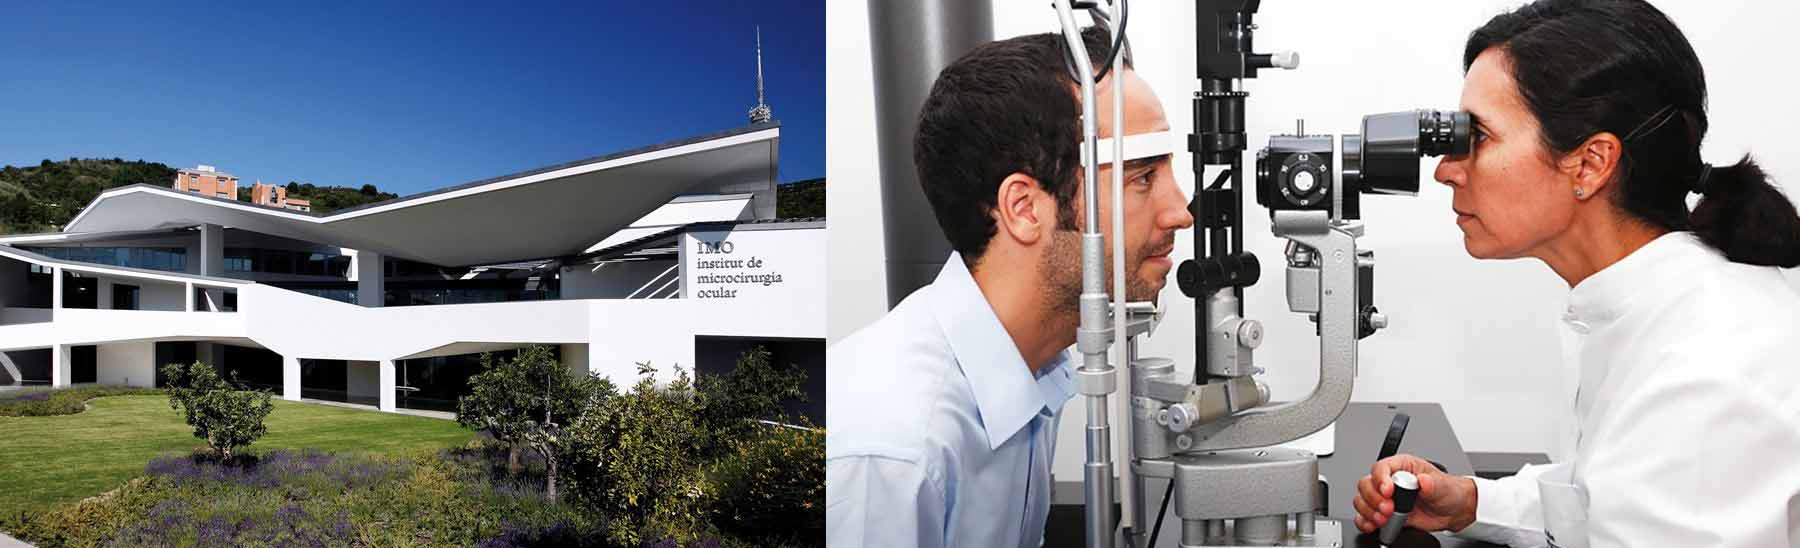 Clinique IMO Ophtalmologie IMO Barcelone Espagne - Institut Ophtalmologique - Hôpital pour les yeux